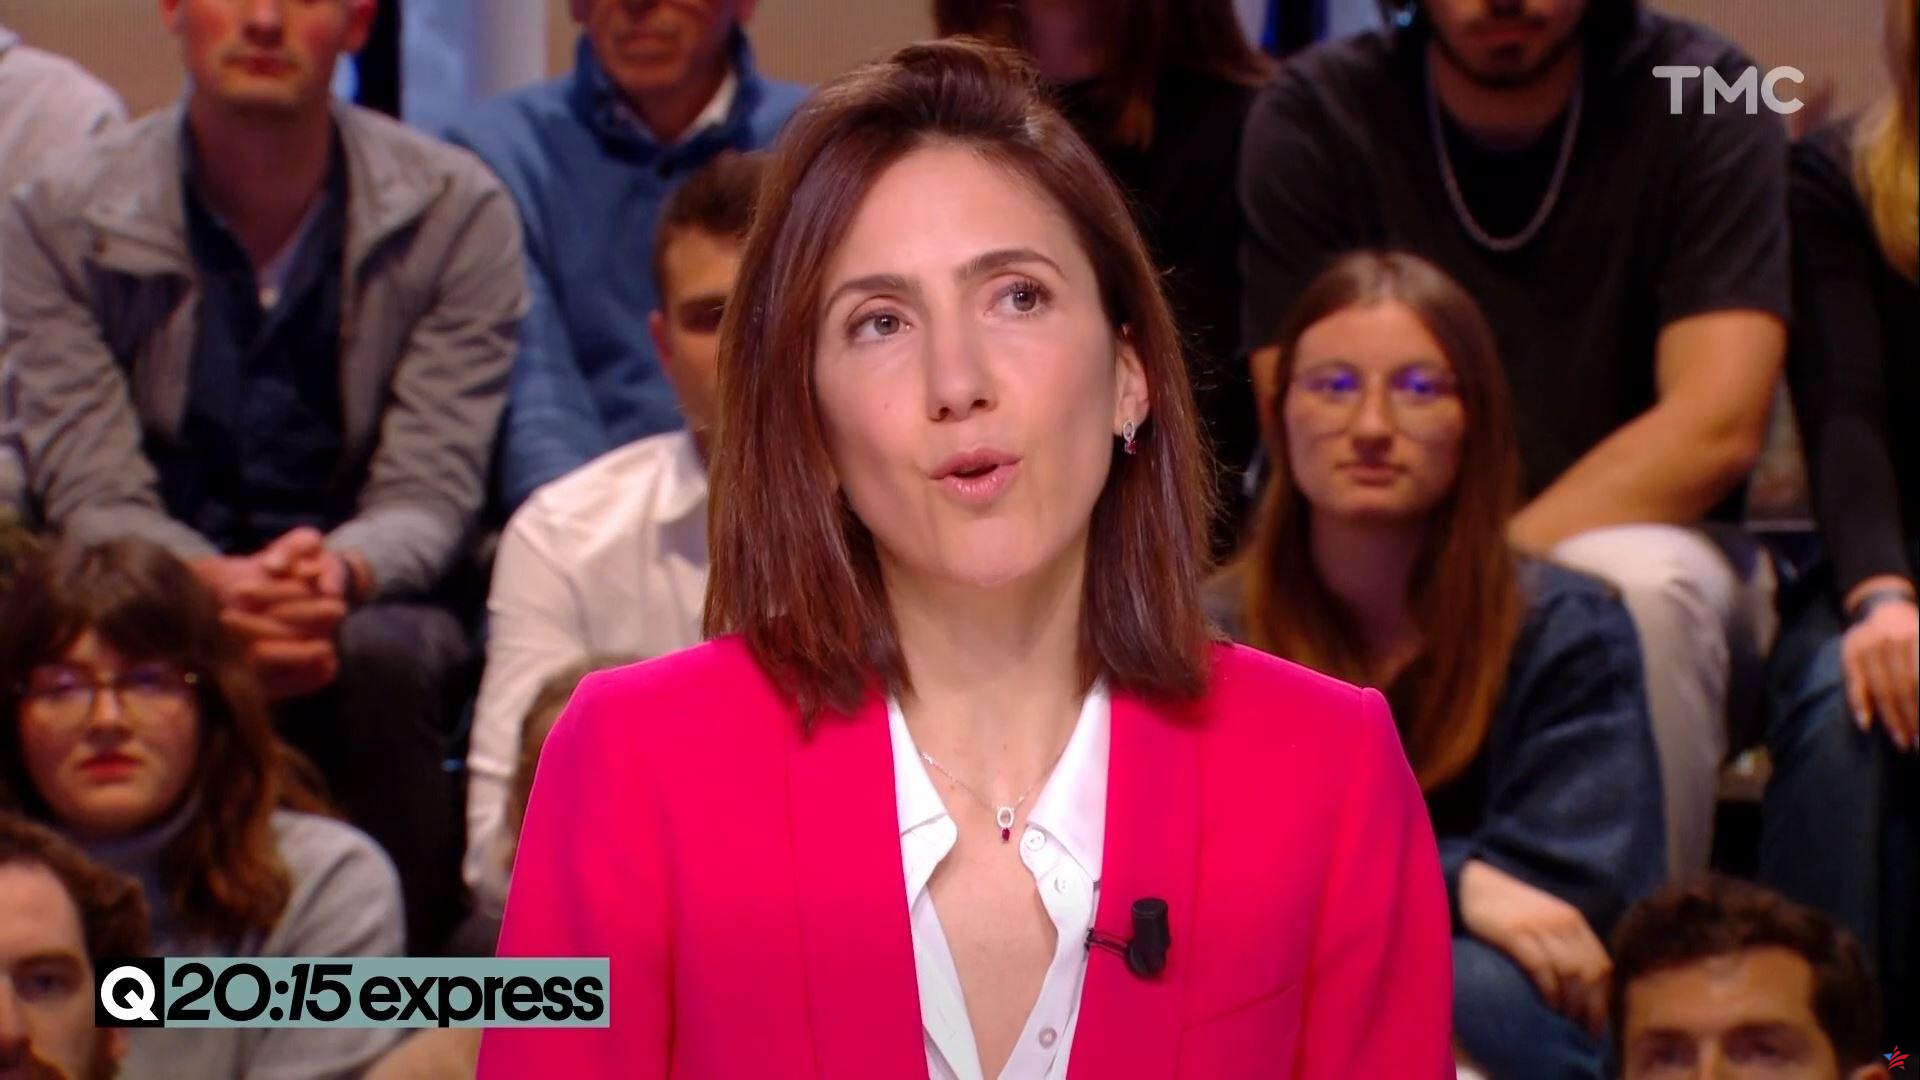 Asunto Depardieu: “Como mujer”, Valérie Hayer no se sentía “muy cómoda” con los comentarios de Macron